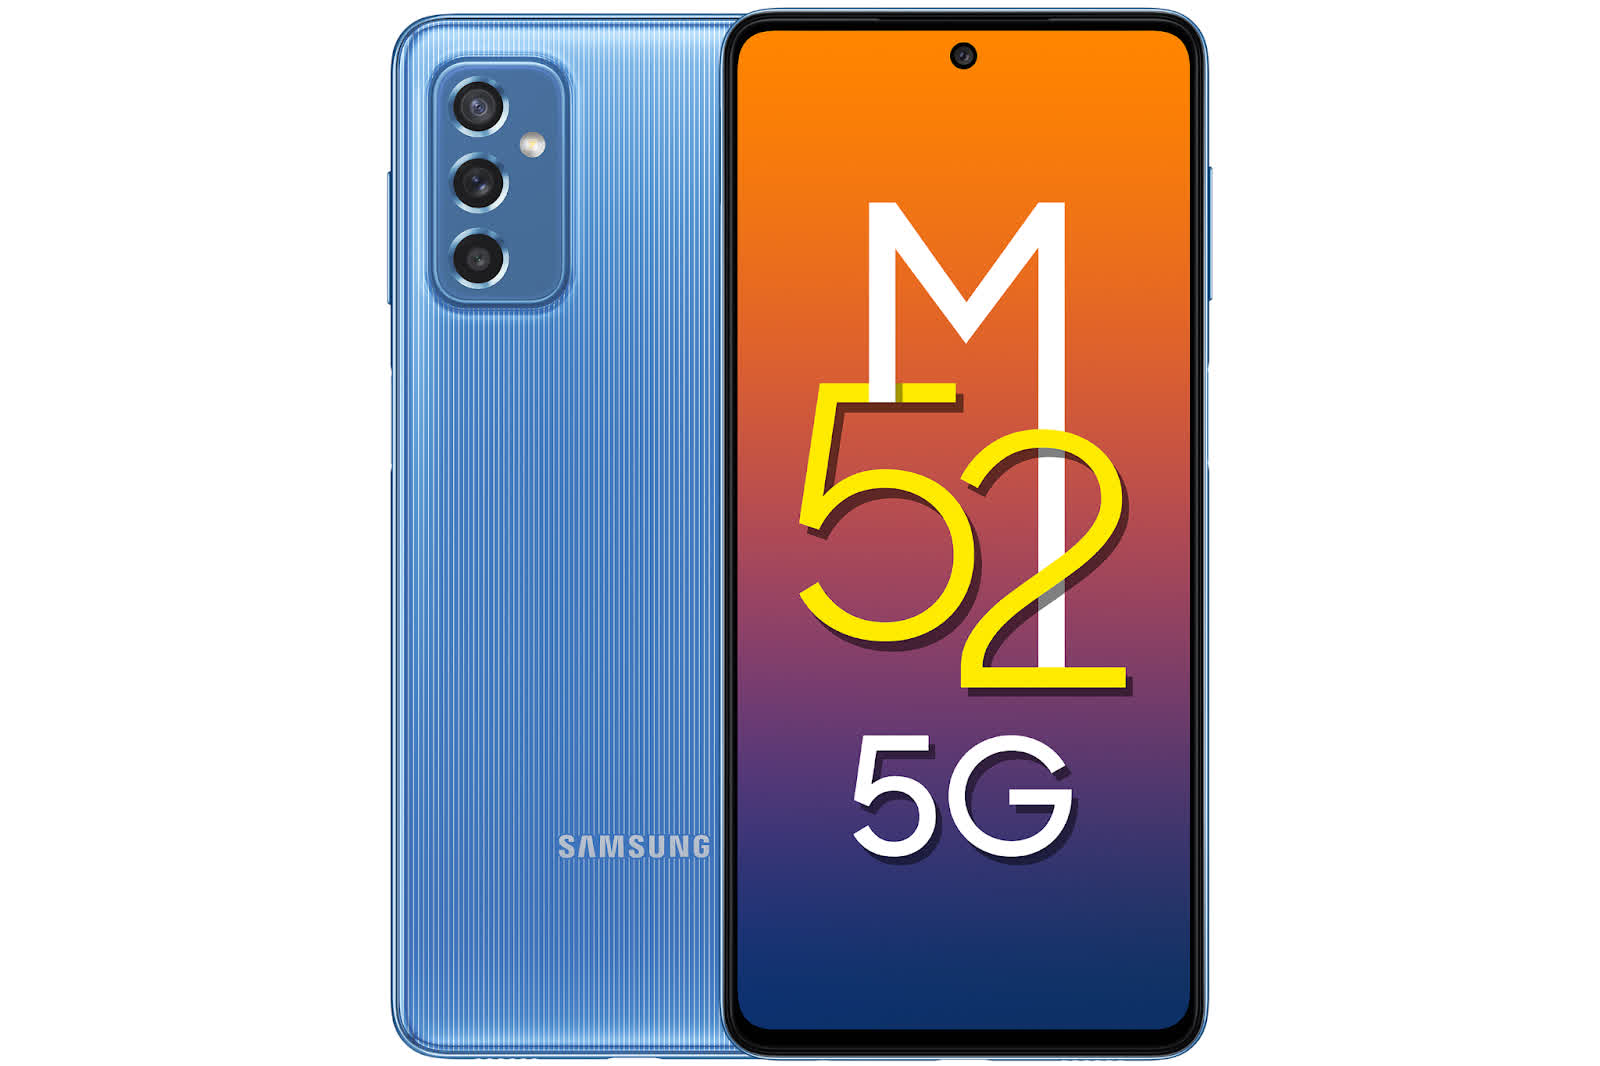 Samsung Galaxy M52 5G ra mắt: Nỗ lực làm chủ phân khúc smartphone 5G tại Việt Nam - Ảnh 1.